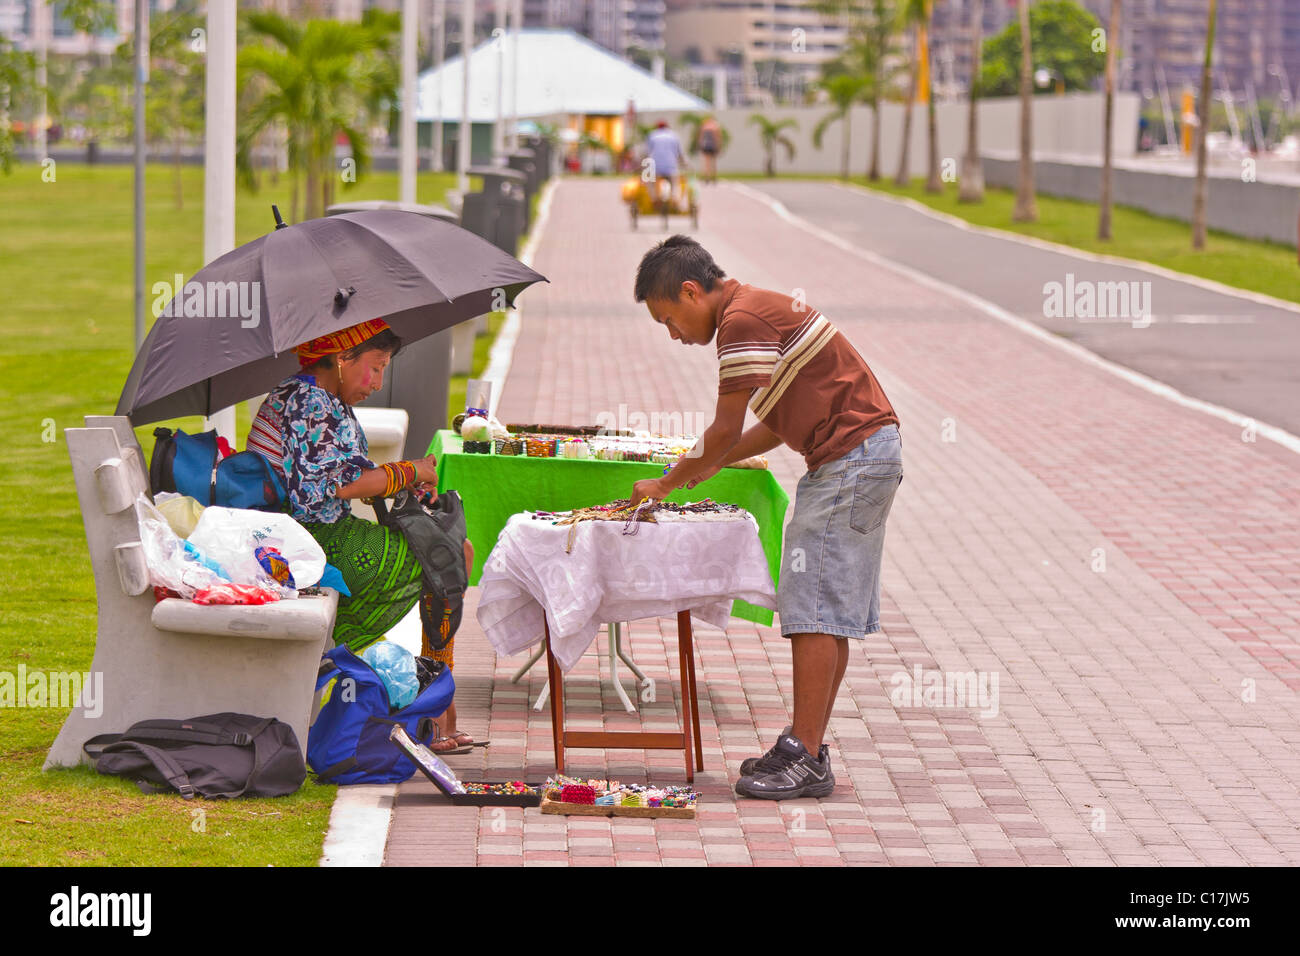 La ville de Panama, Panama - Personnes dans le parc Balboa Avenue. Banque D'Images